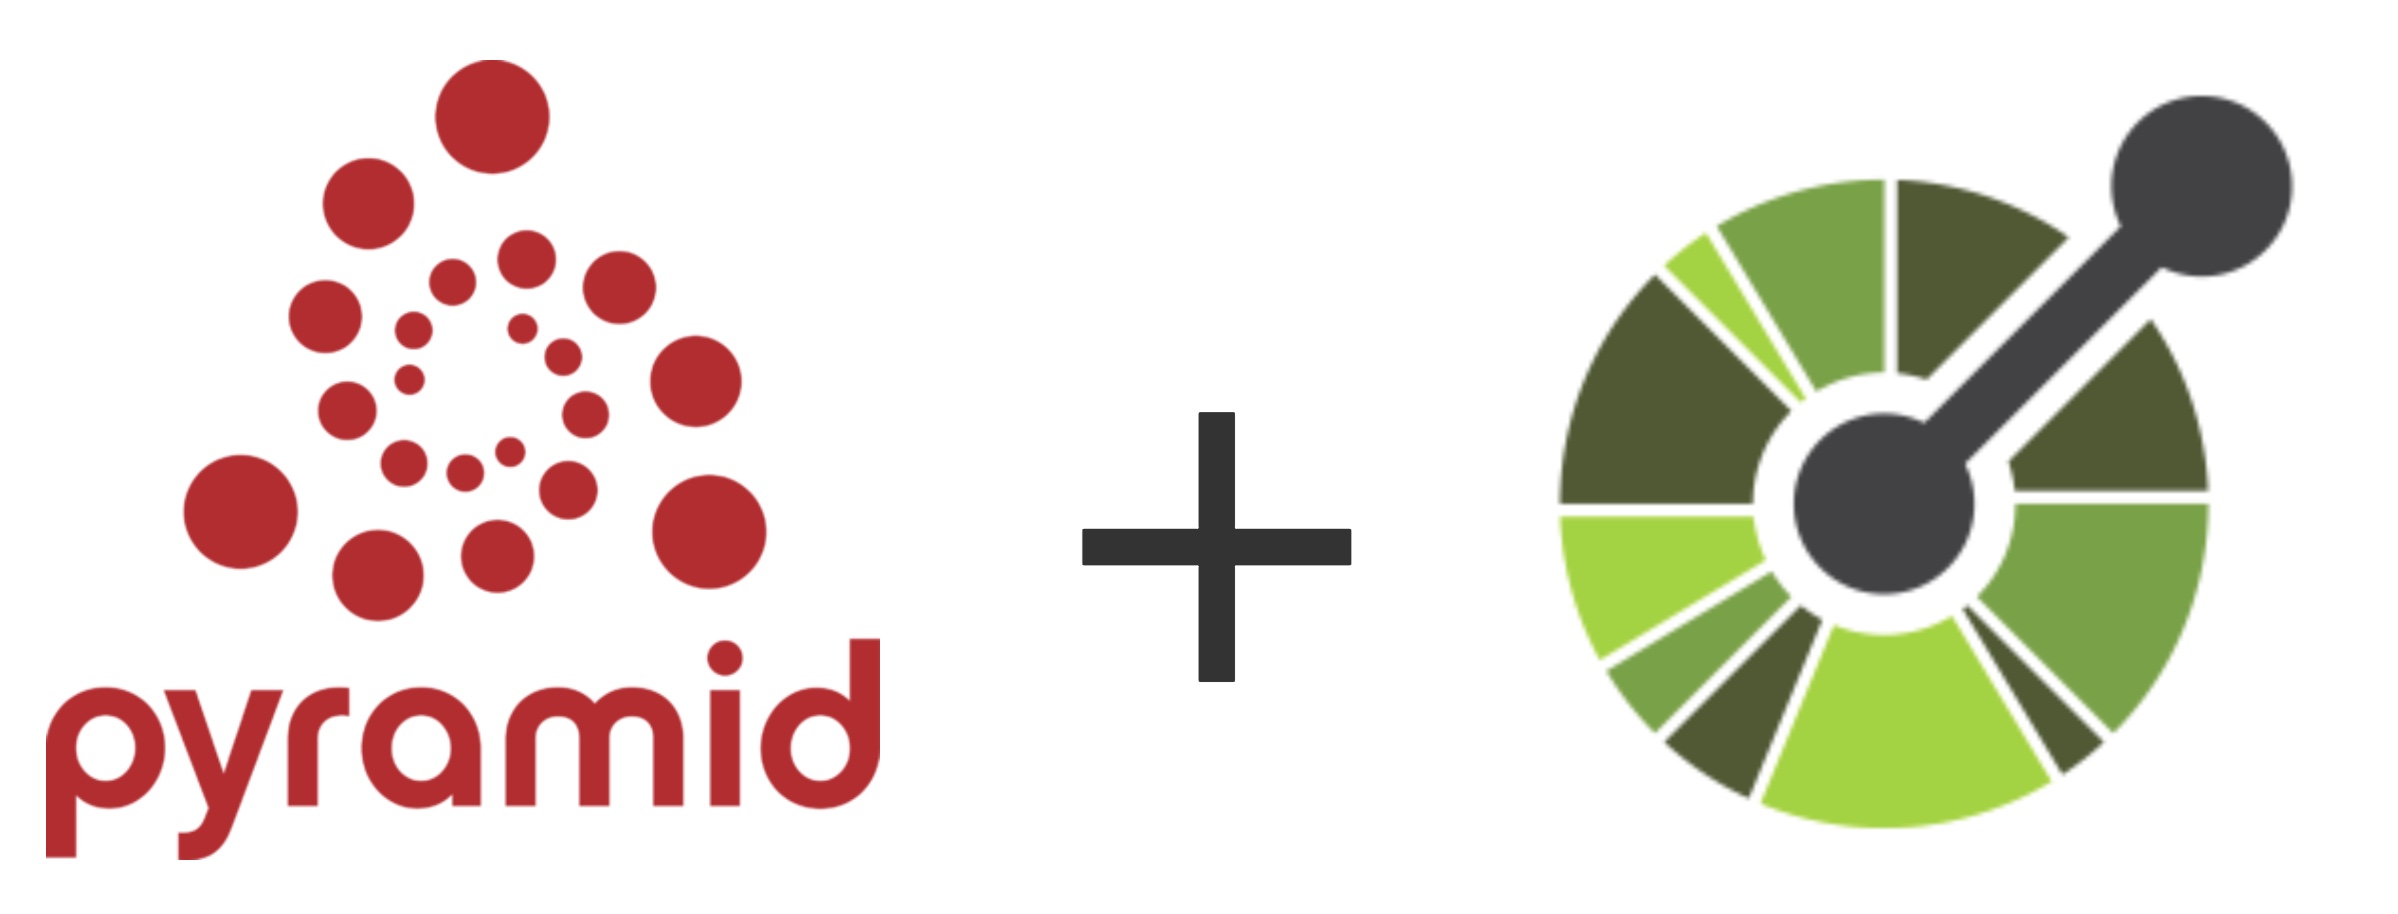 Pyramid and OpenAPI logos